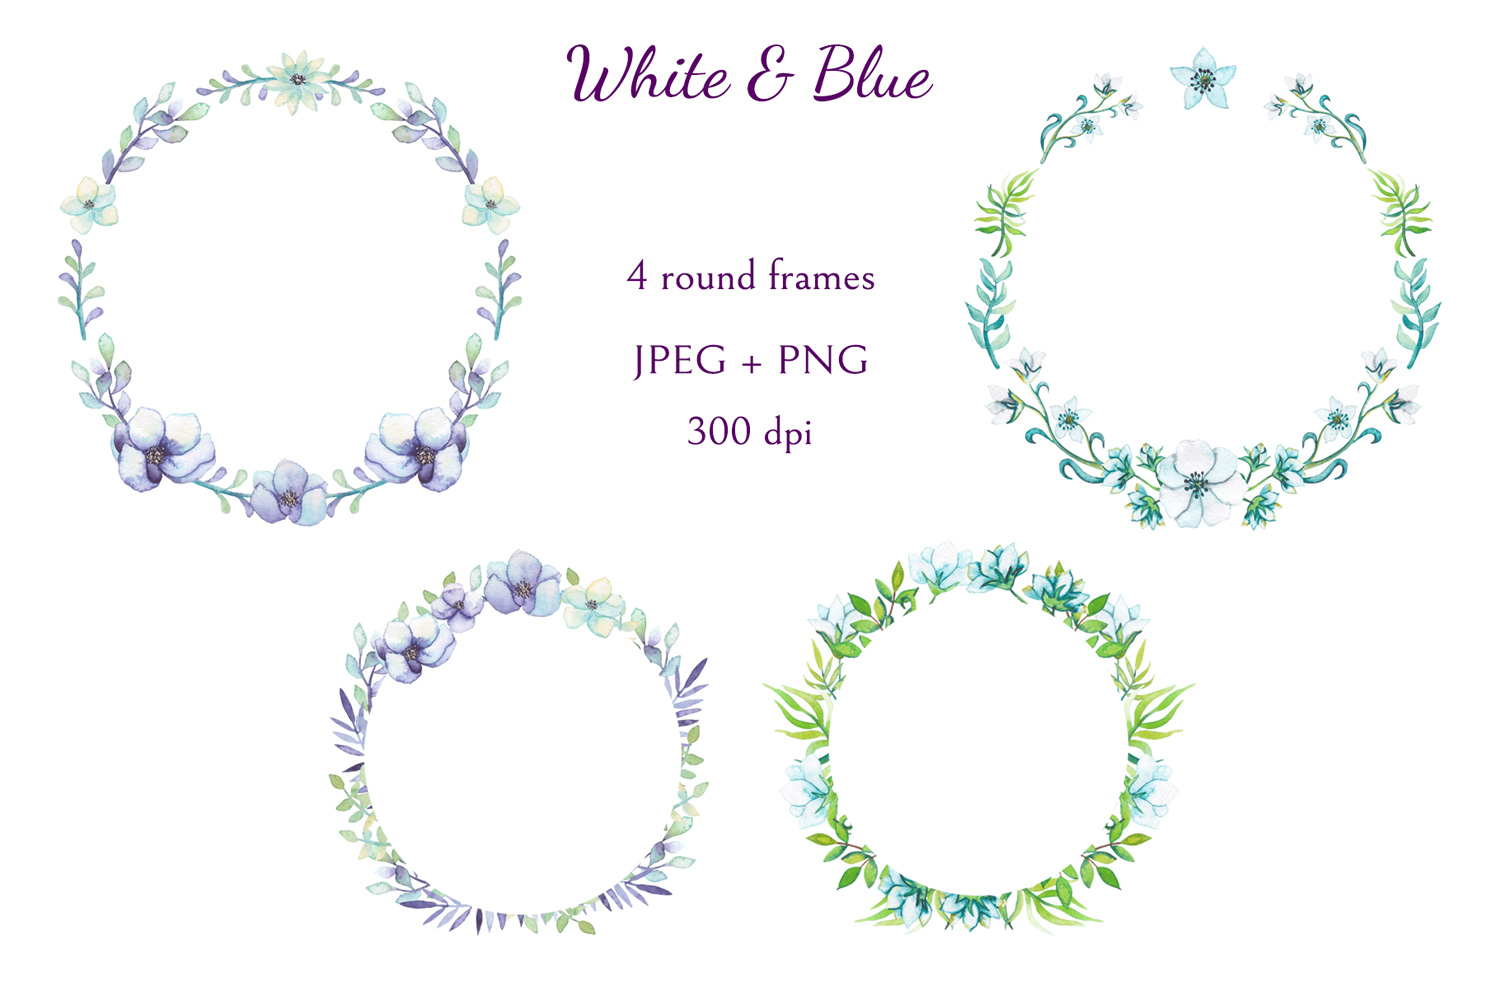 柔和的紫罗兰花卉系列水彩剪贴画素材合集 White and